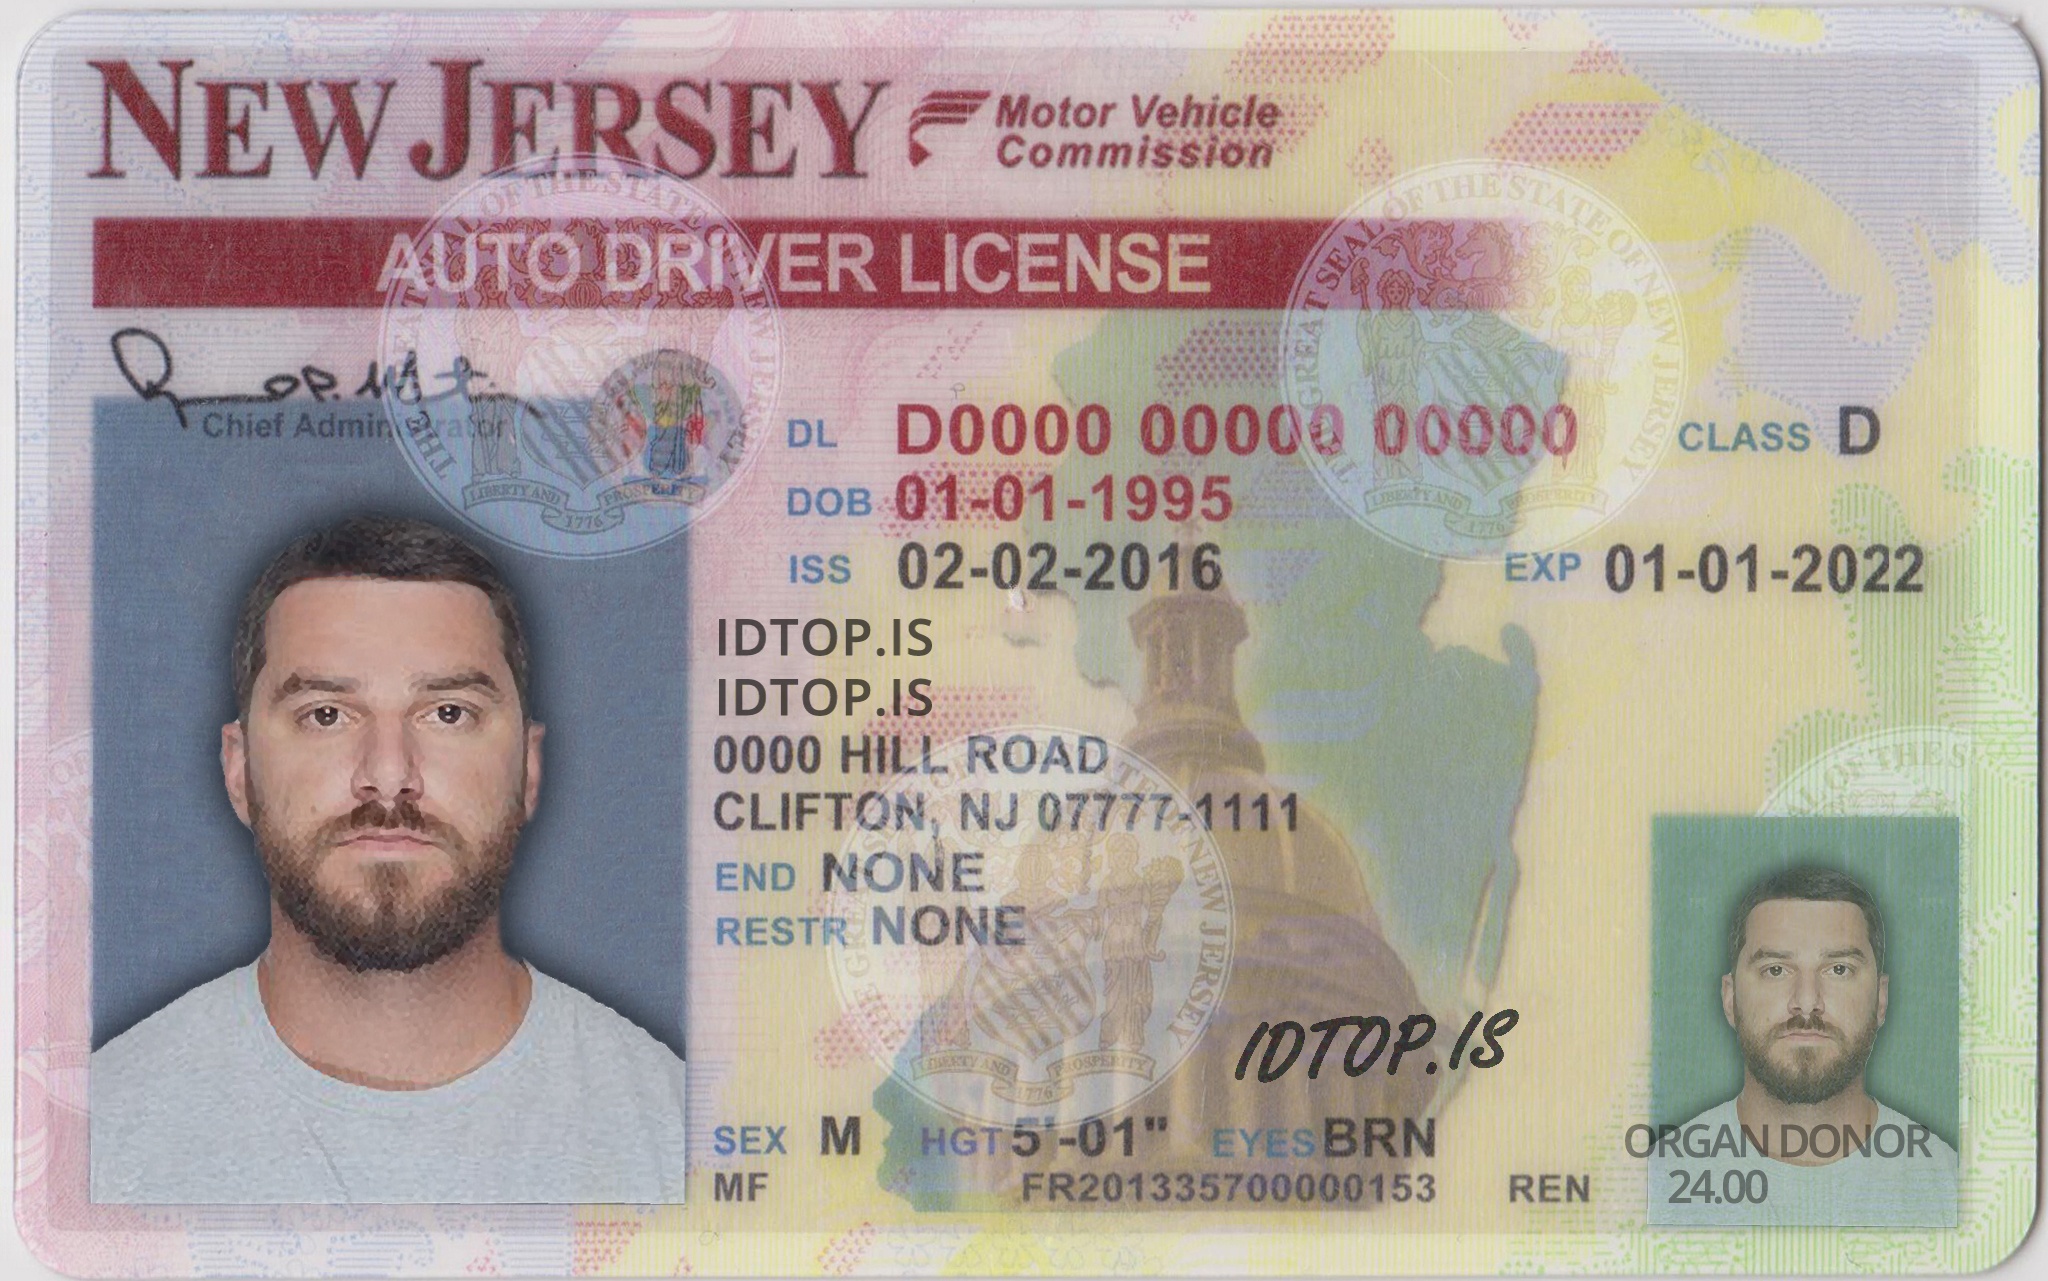 Driver license